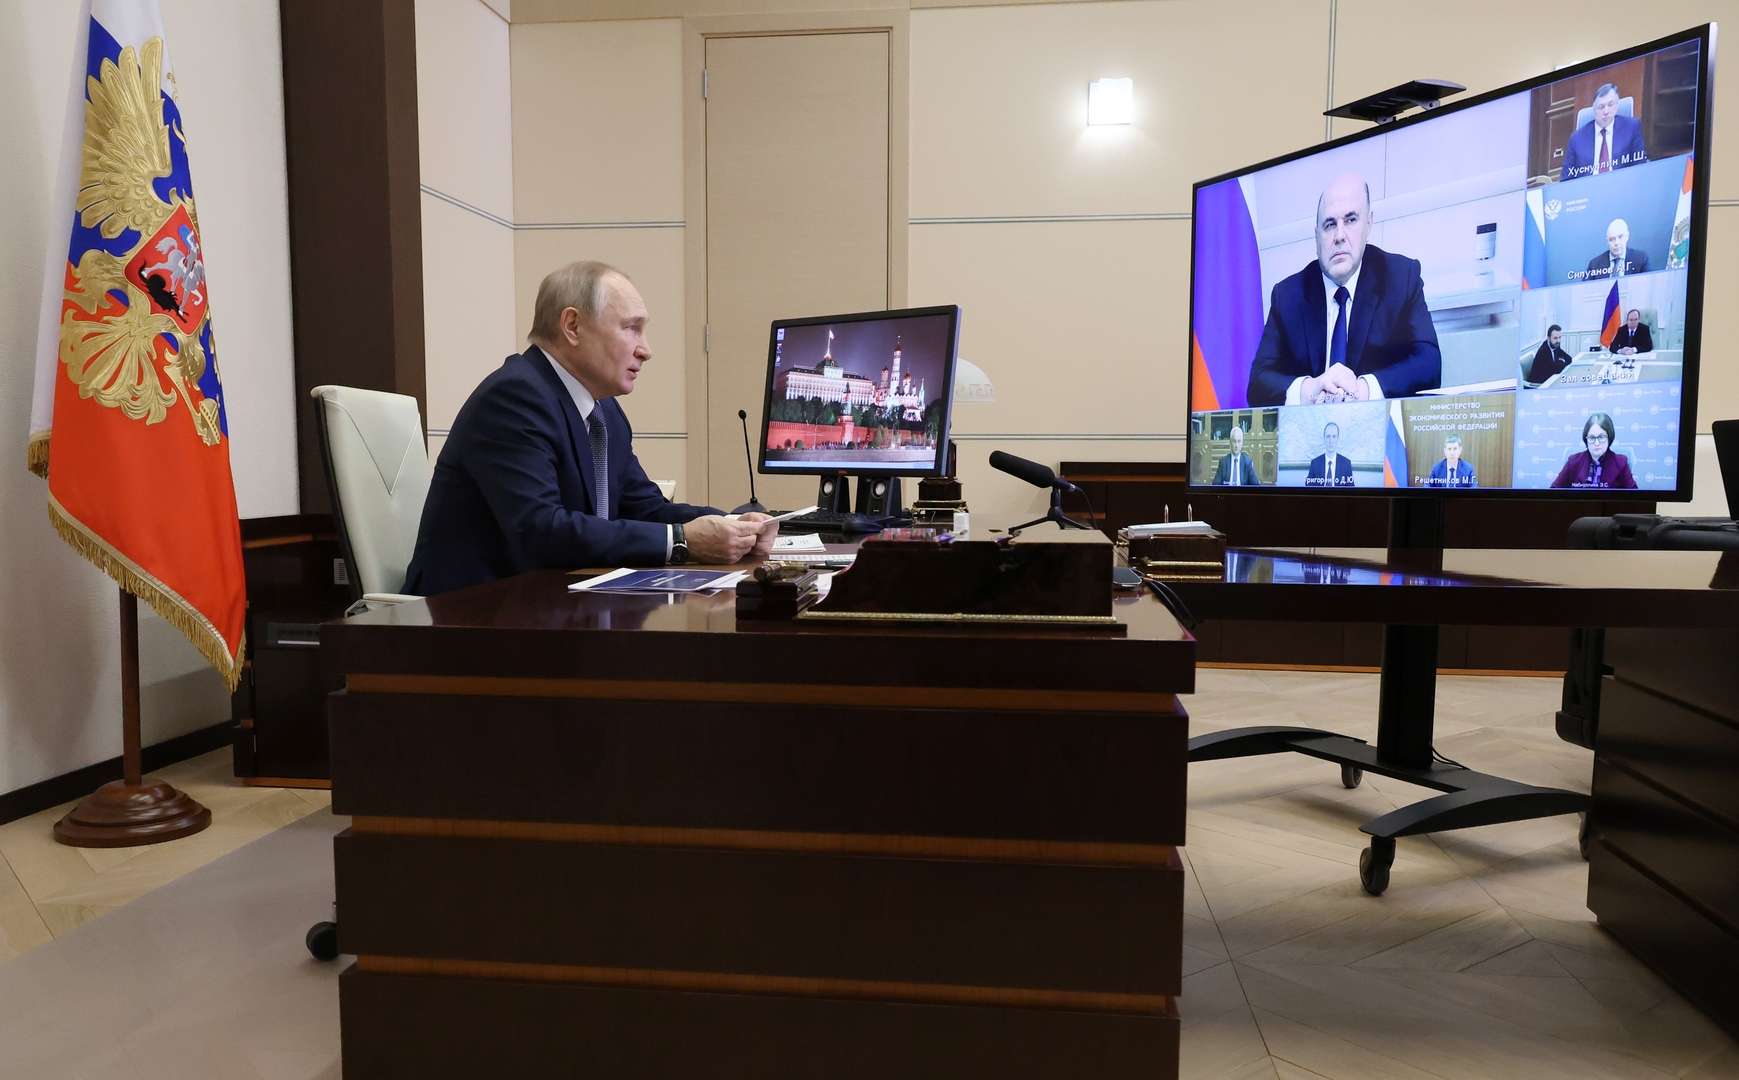 بوتين يحدد مهام العمل الرئيسة للحكومة الروسية في العام الجديد 2023